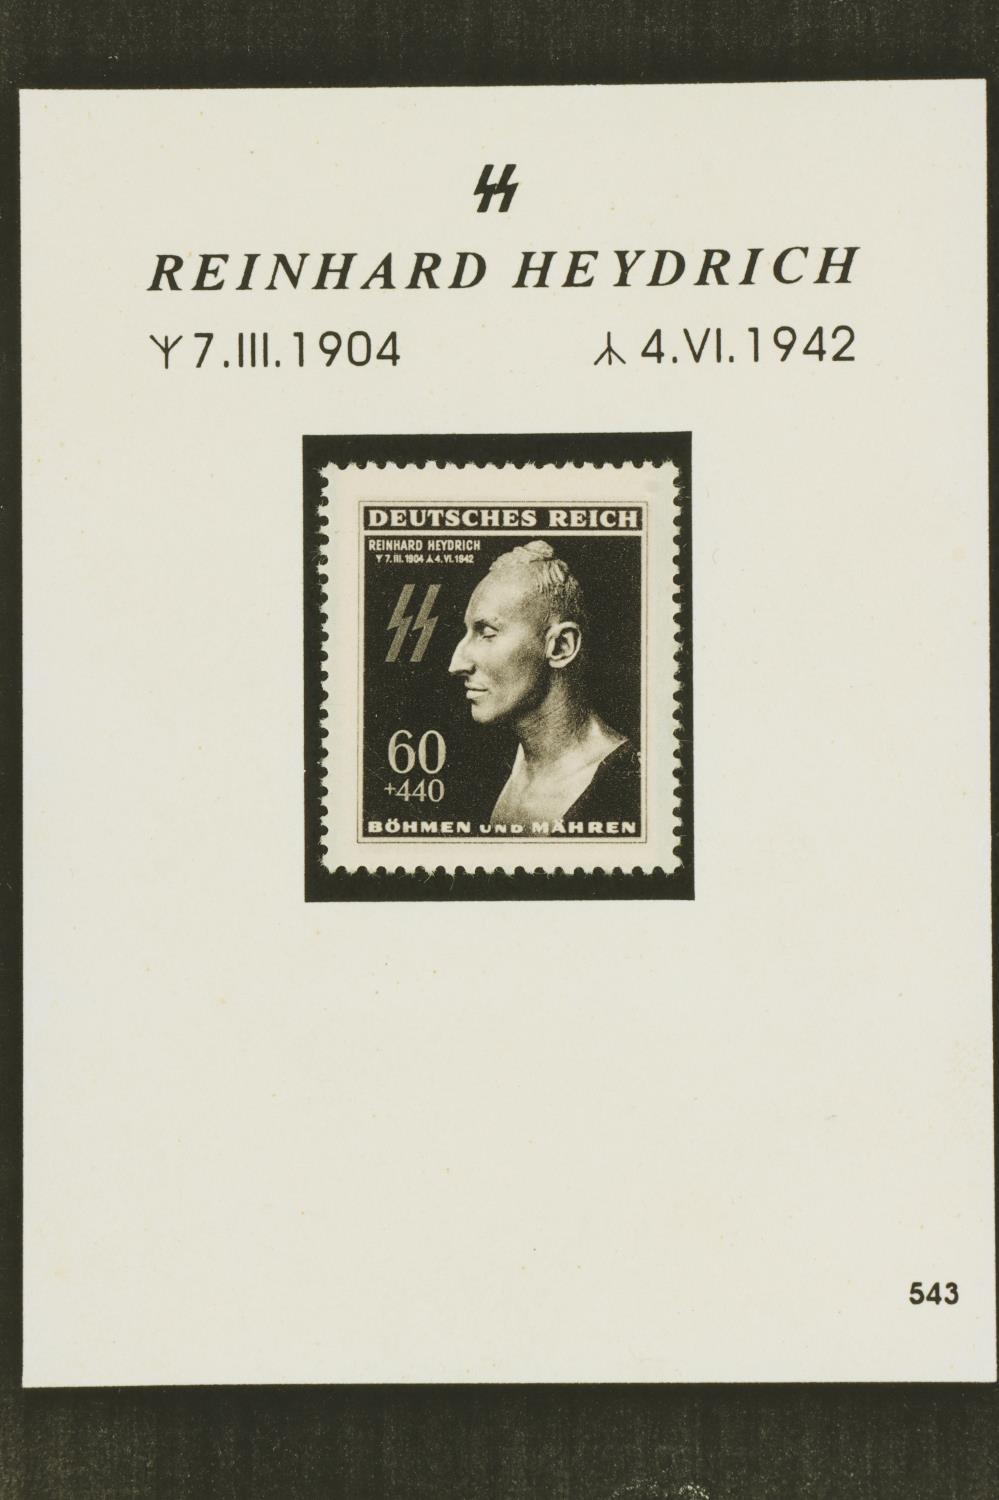 REINHARD HEYDRICH INK PORTRAIT DATED 1942